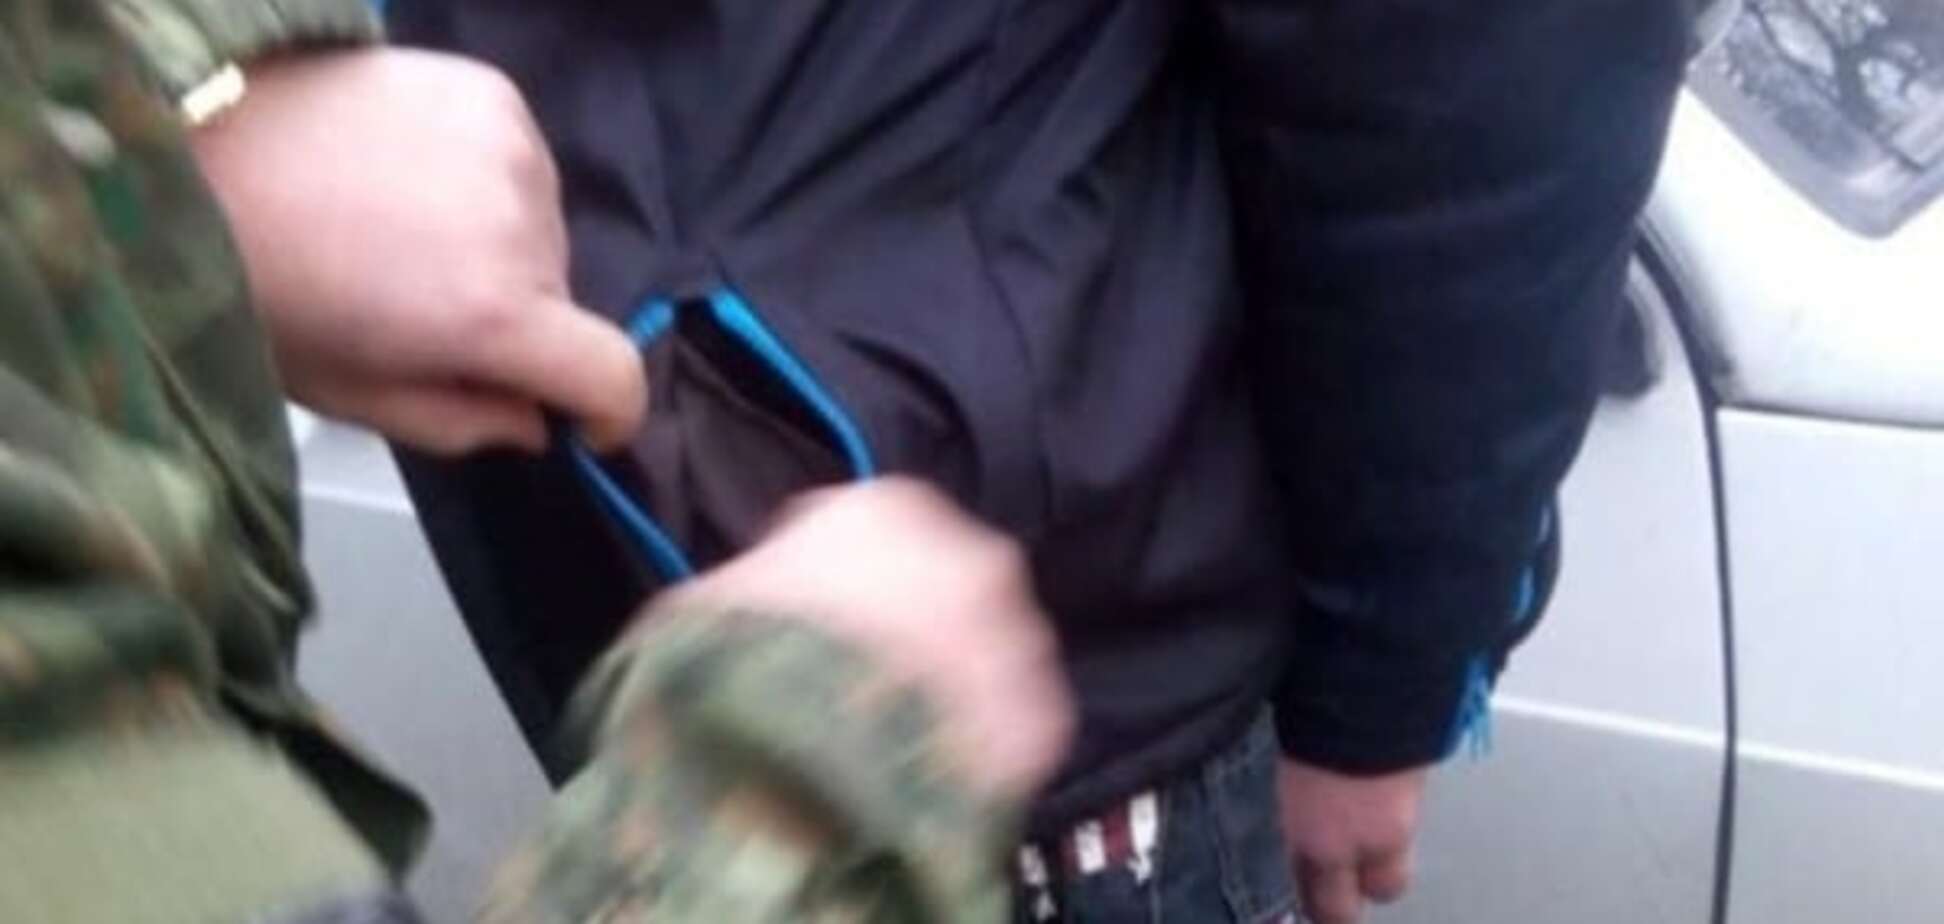 Граната в кишені: в Маріуполі поліція затримала небезпечного підлітка. Фотофакт